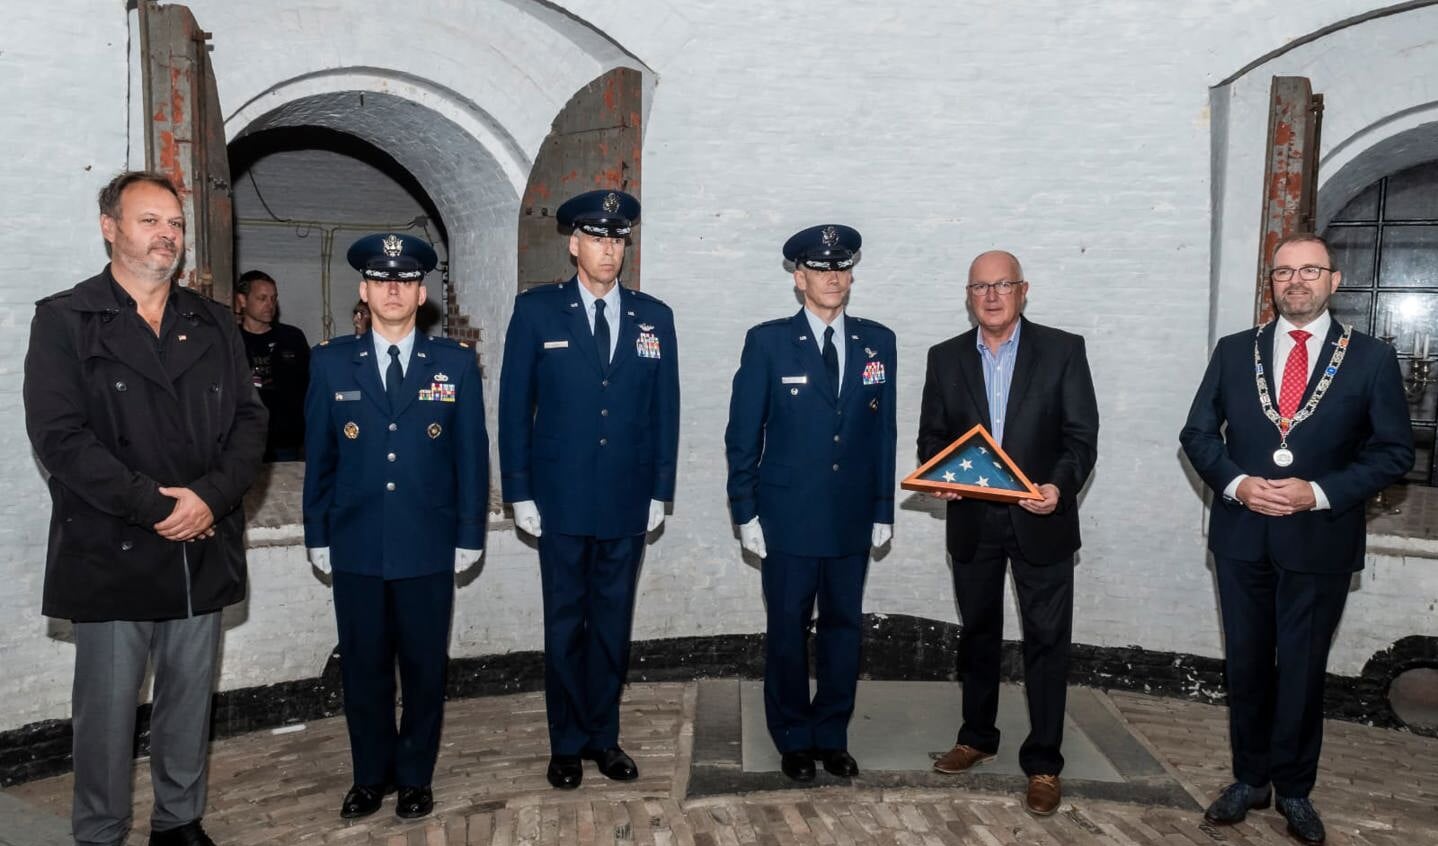 Groepsfoto (Links staat de voorzitter van het museum, Peter den Tek, dan de 3 USAF militairen, Ambassadeur Hoekstra en burgemeester Stoop) 